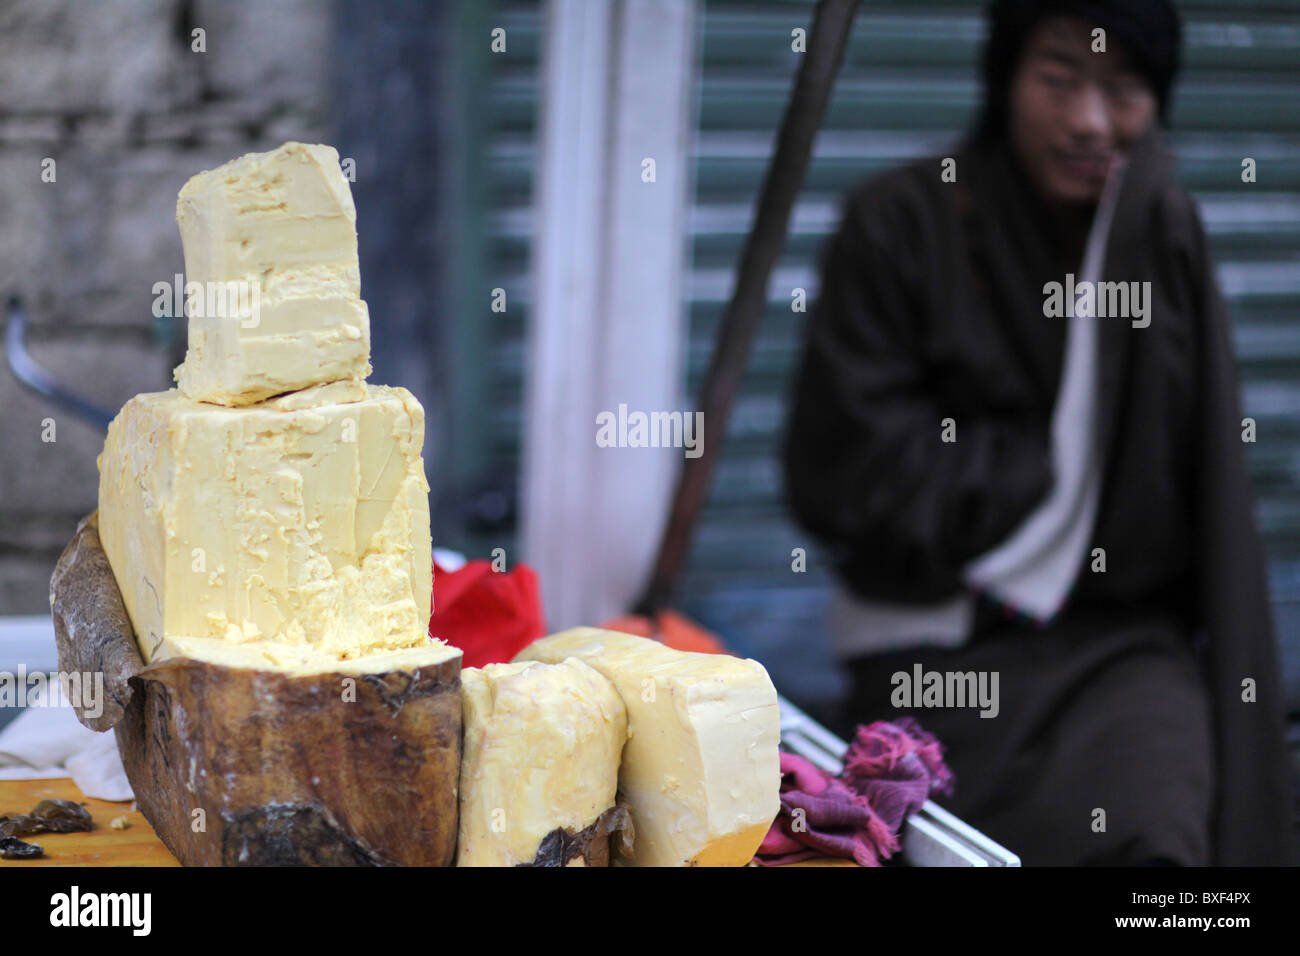 Blöcke von Yak-Butter auf dem Display in den Straßen von Lhasa, der Hauptstadt Tibets (tibetische autonome Region), China. Stockfoto